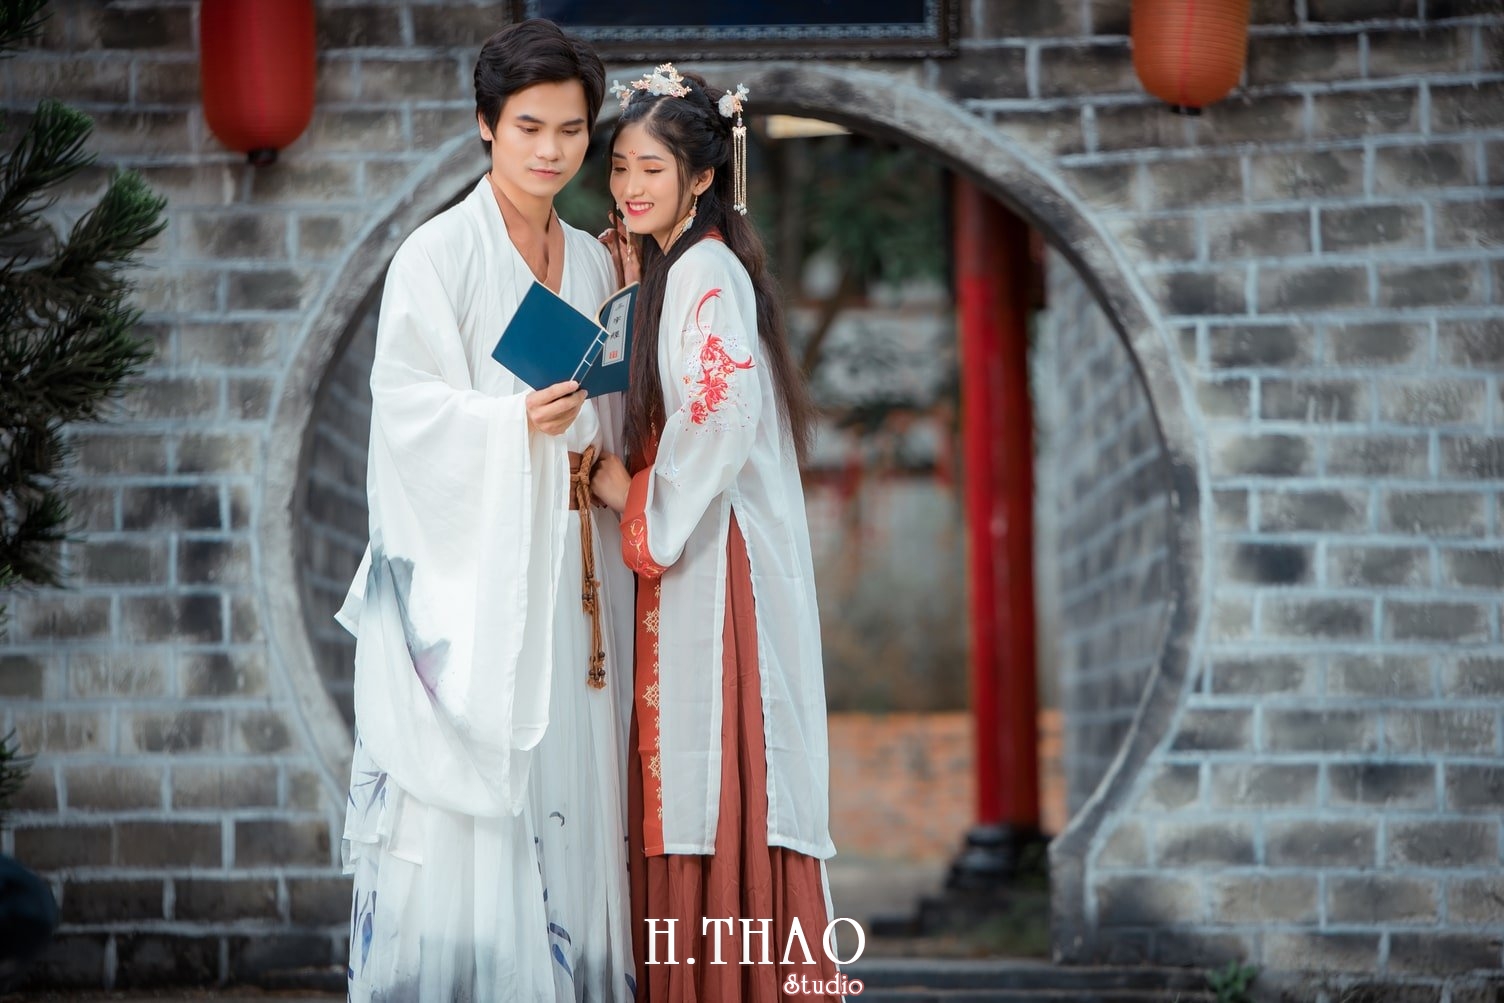 Anh co trang nam 10 - 35 cách tạo dáng chụp ảnh đôi lãng mạn nhất - HThao Studio